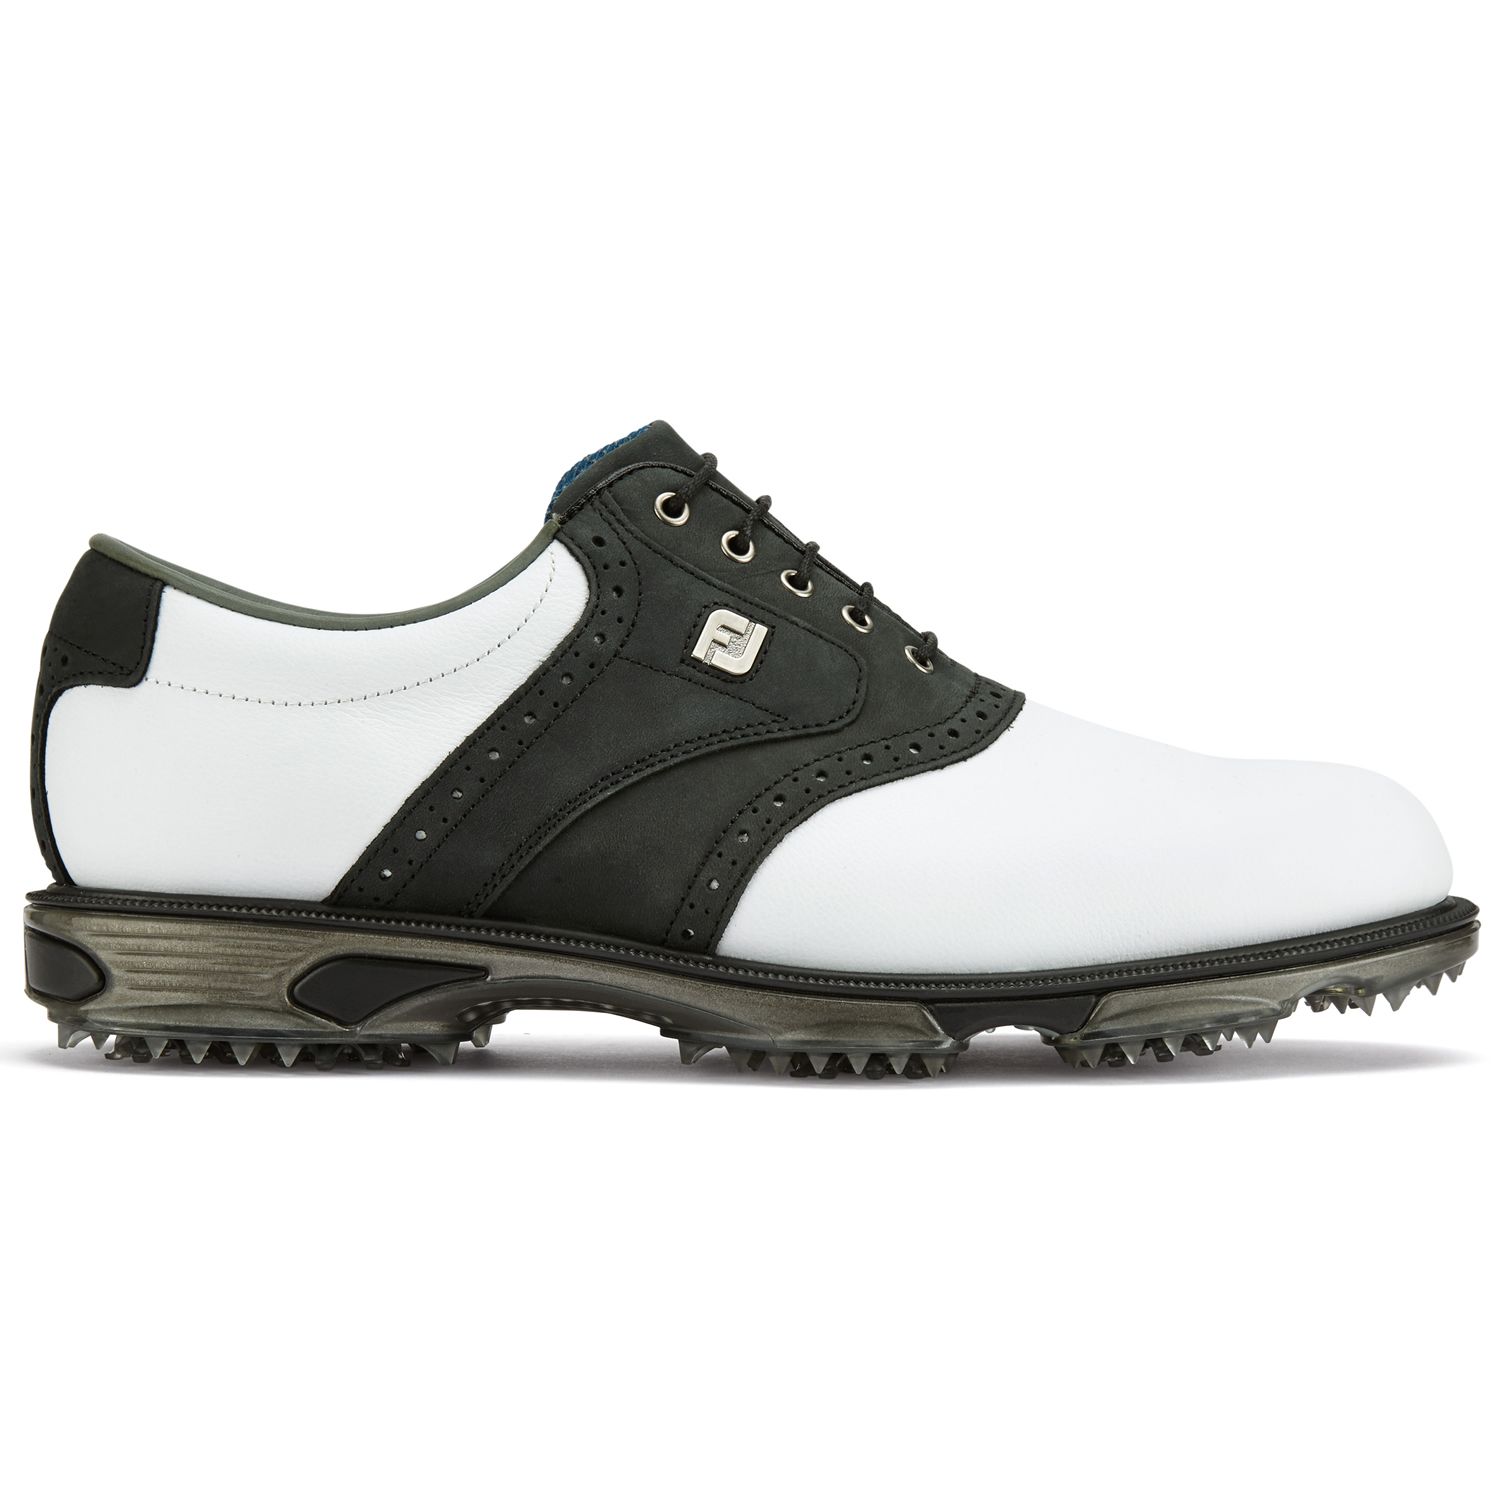 FootJoy DryJoys Tour Golf Shoes #53752 White/Black | Scottsdale Golf